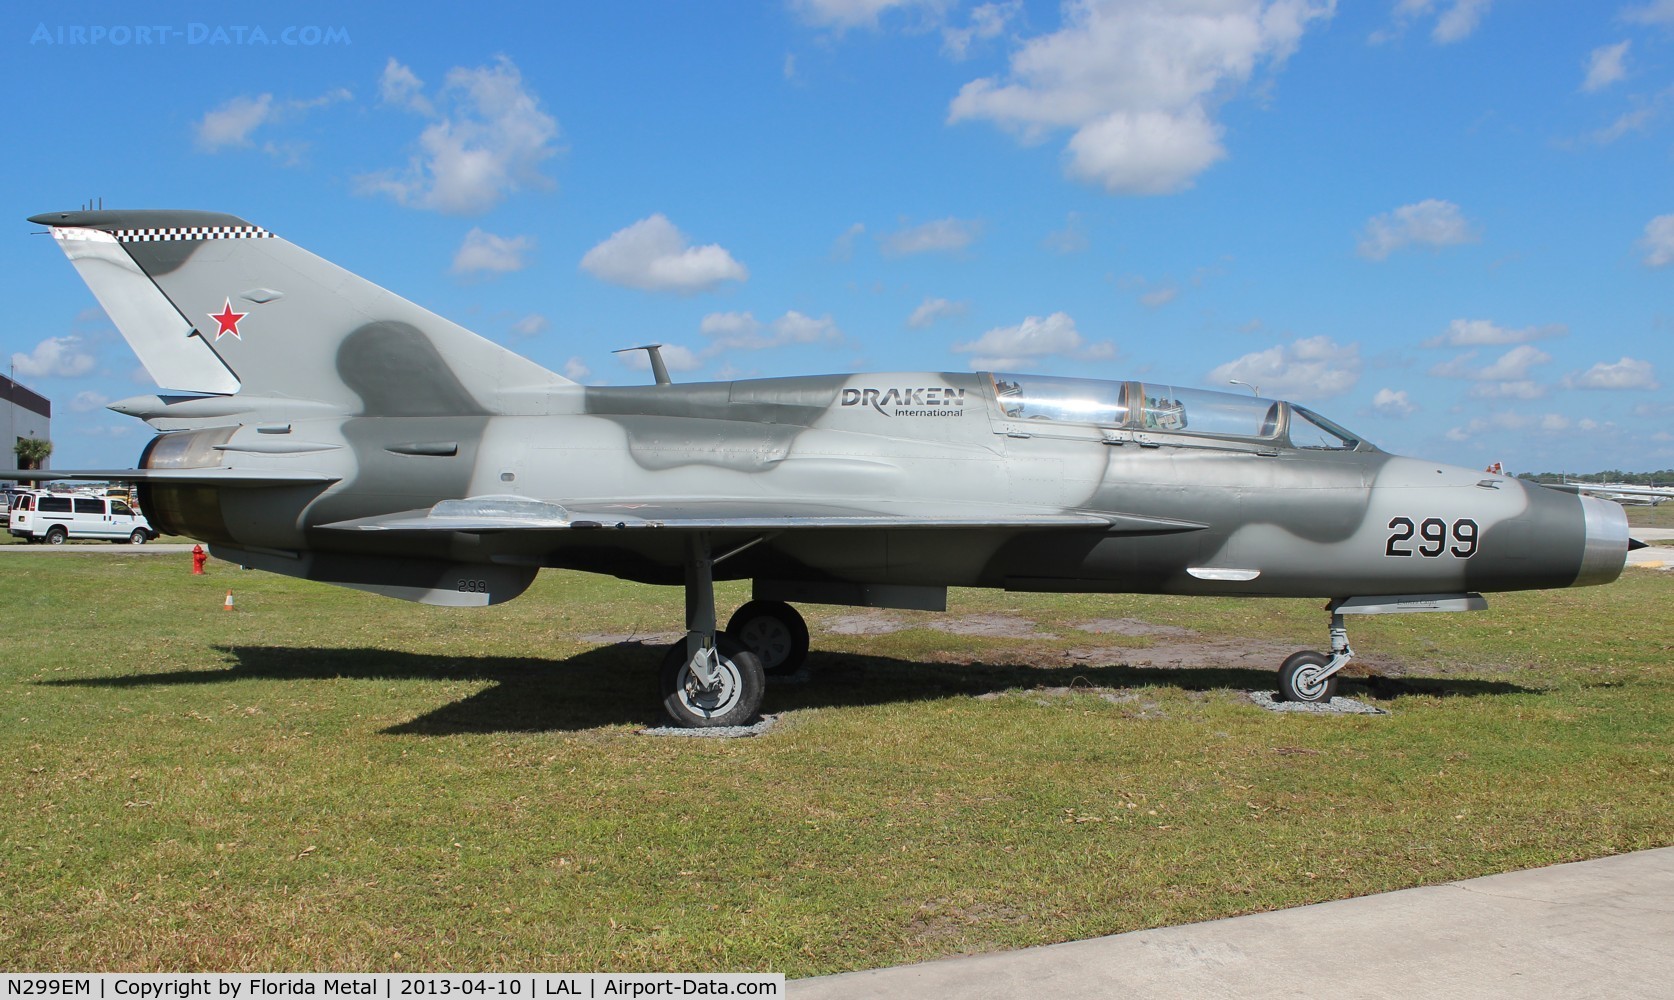 N299EM, Mikoyan-Gurevich MiG-21 C/N Not found N299EM, Mig-21